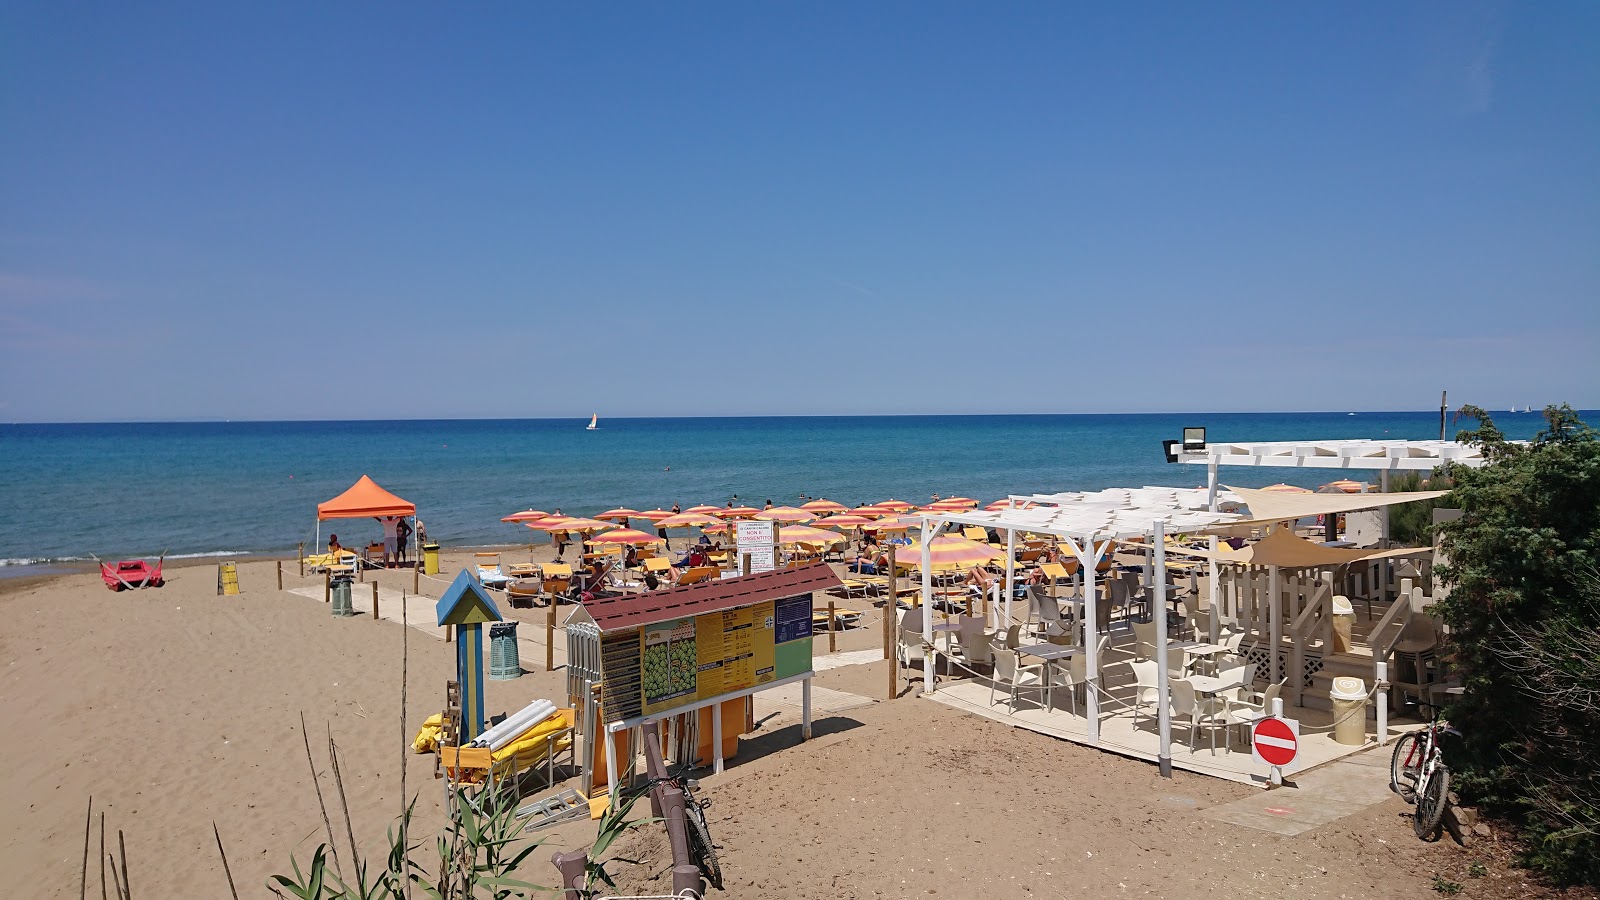 Photo de Spiaggia di Rimigliano situé dans une zone naturelle